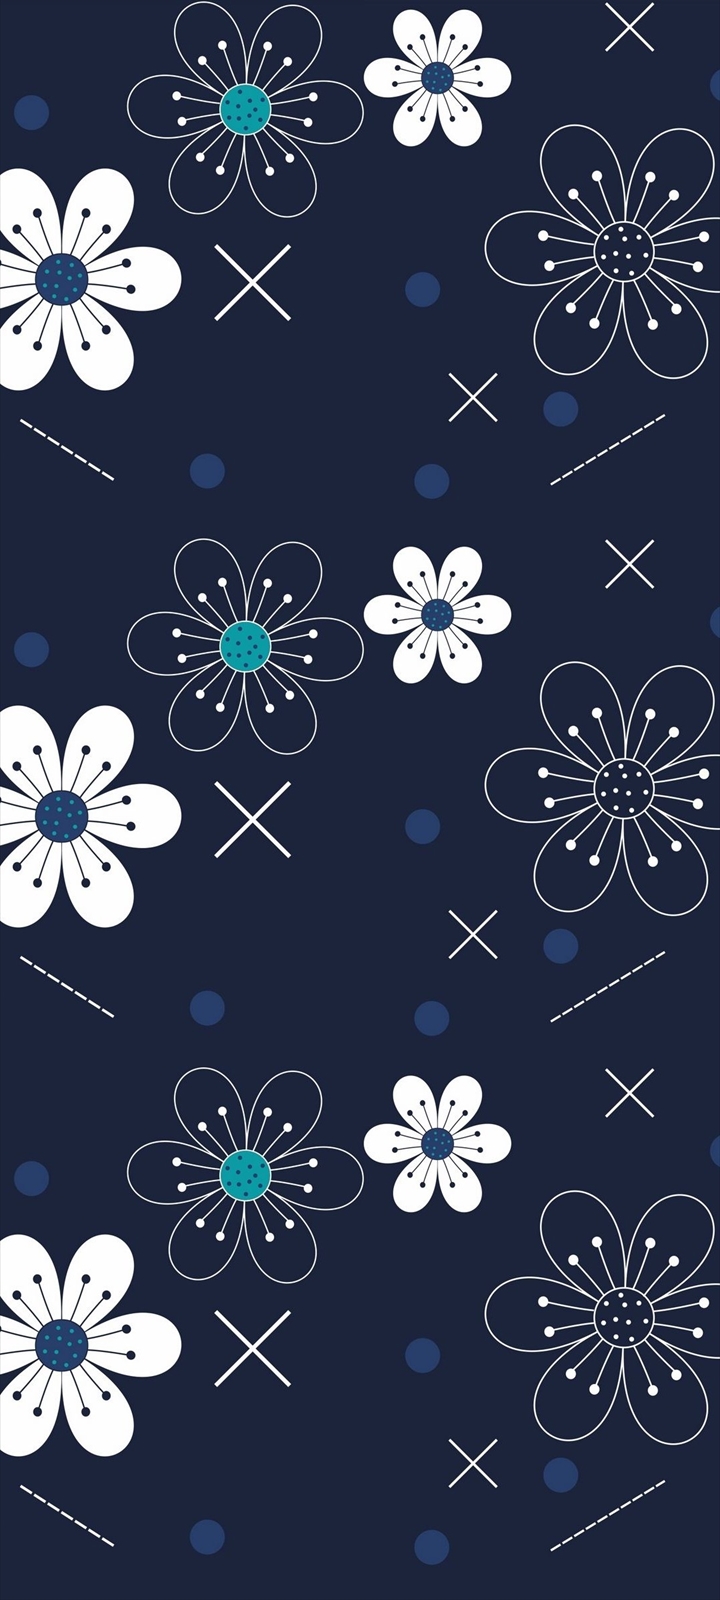 可愛い紺 白の花柄 Galaxy A32 5g 壁紙 待ち受け Sumaran